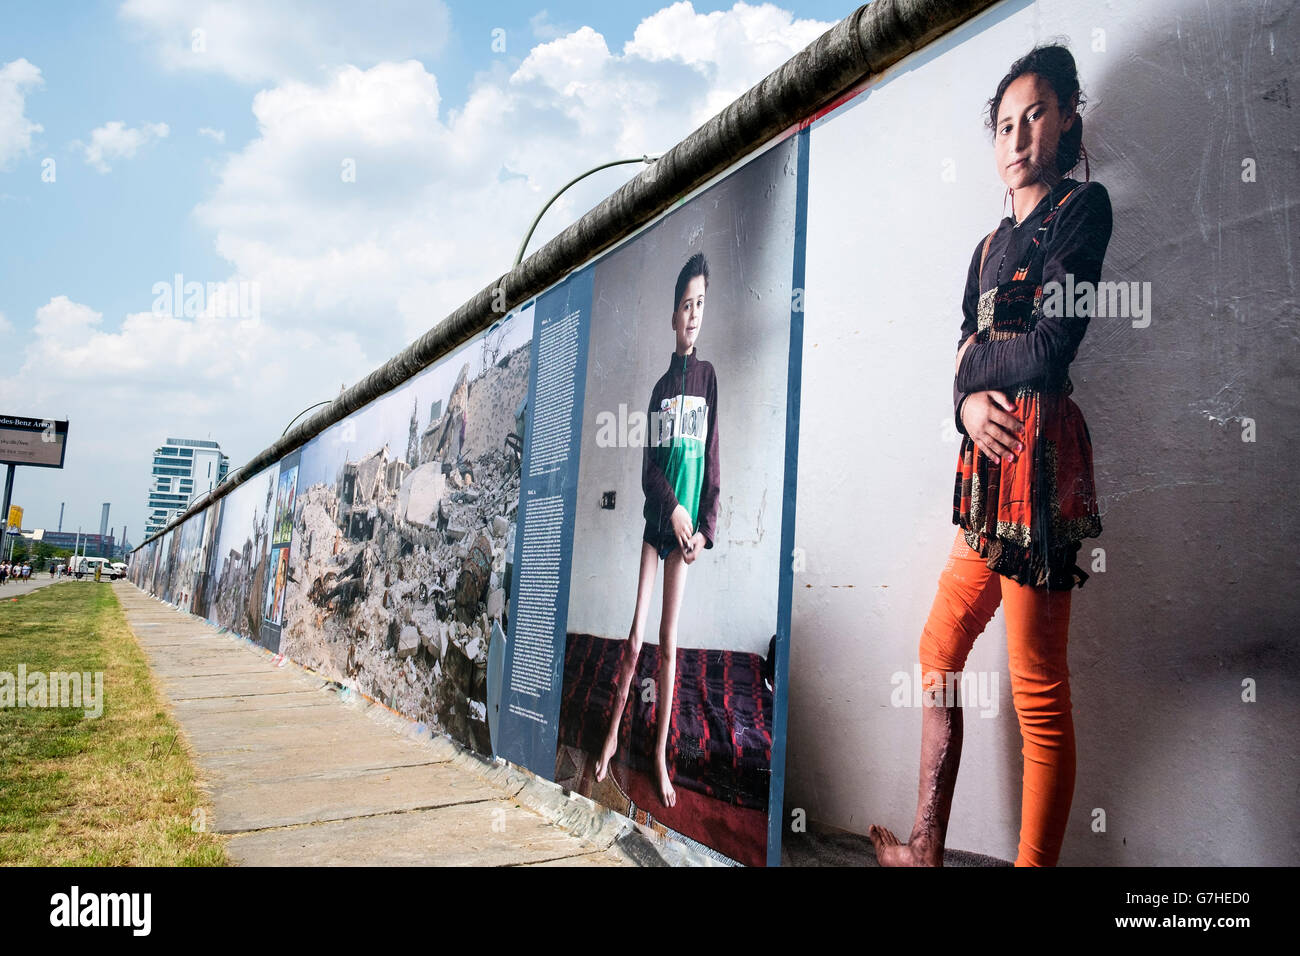 Bilder aus dem Krieg an Wand, eine Fotoausstellung über den Krieg in Syrien von Kai Wiedenhofer im Freien auf der Berliner Mauer angezeigt Stockfoto